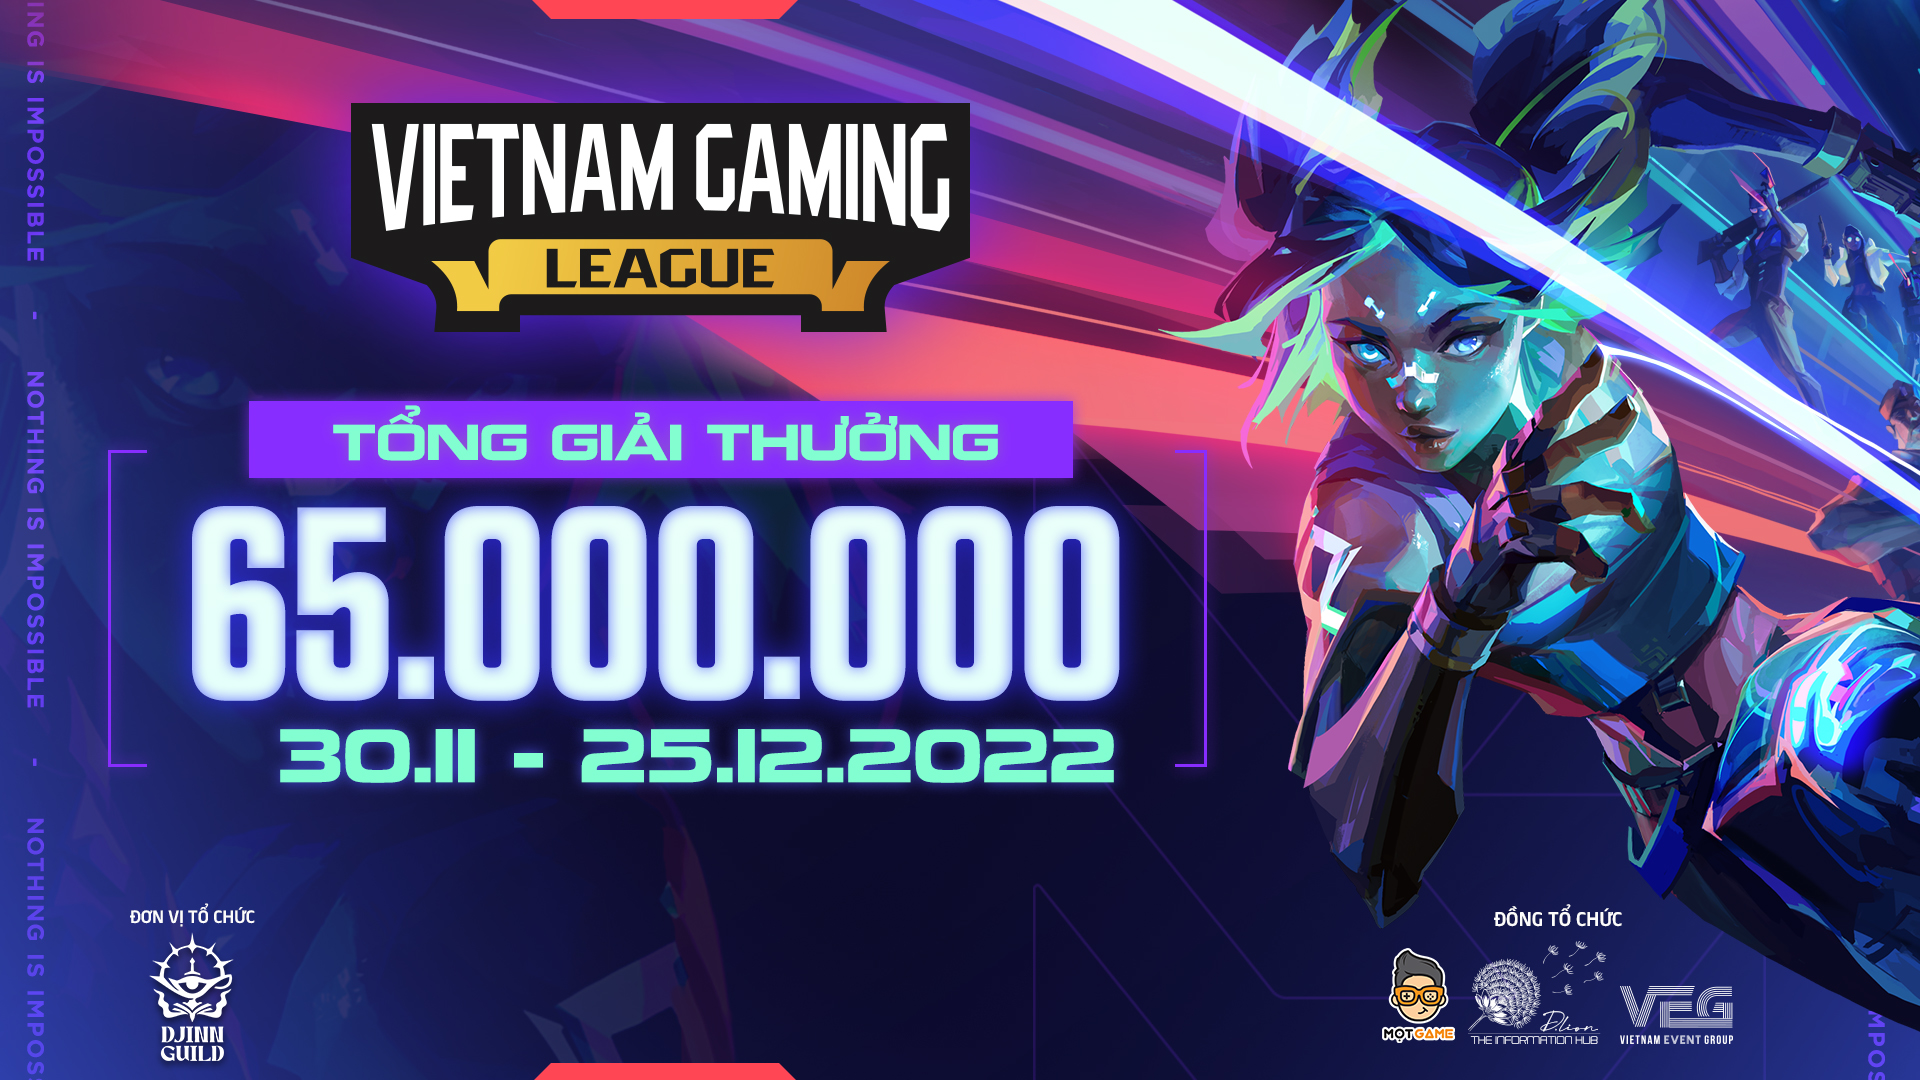 Mở đăng ký giải Tốc Chiến Community Tournament tại Vietnam Gaming League